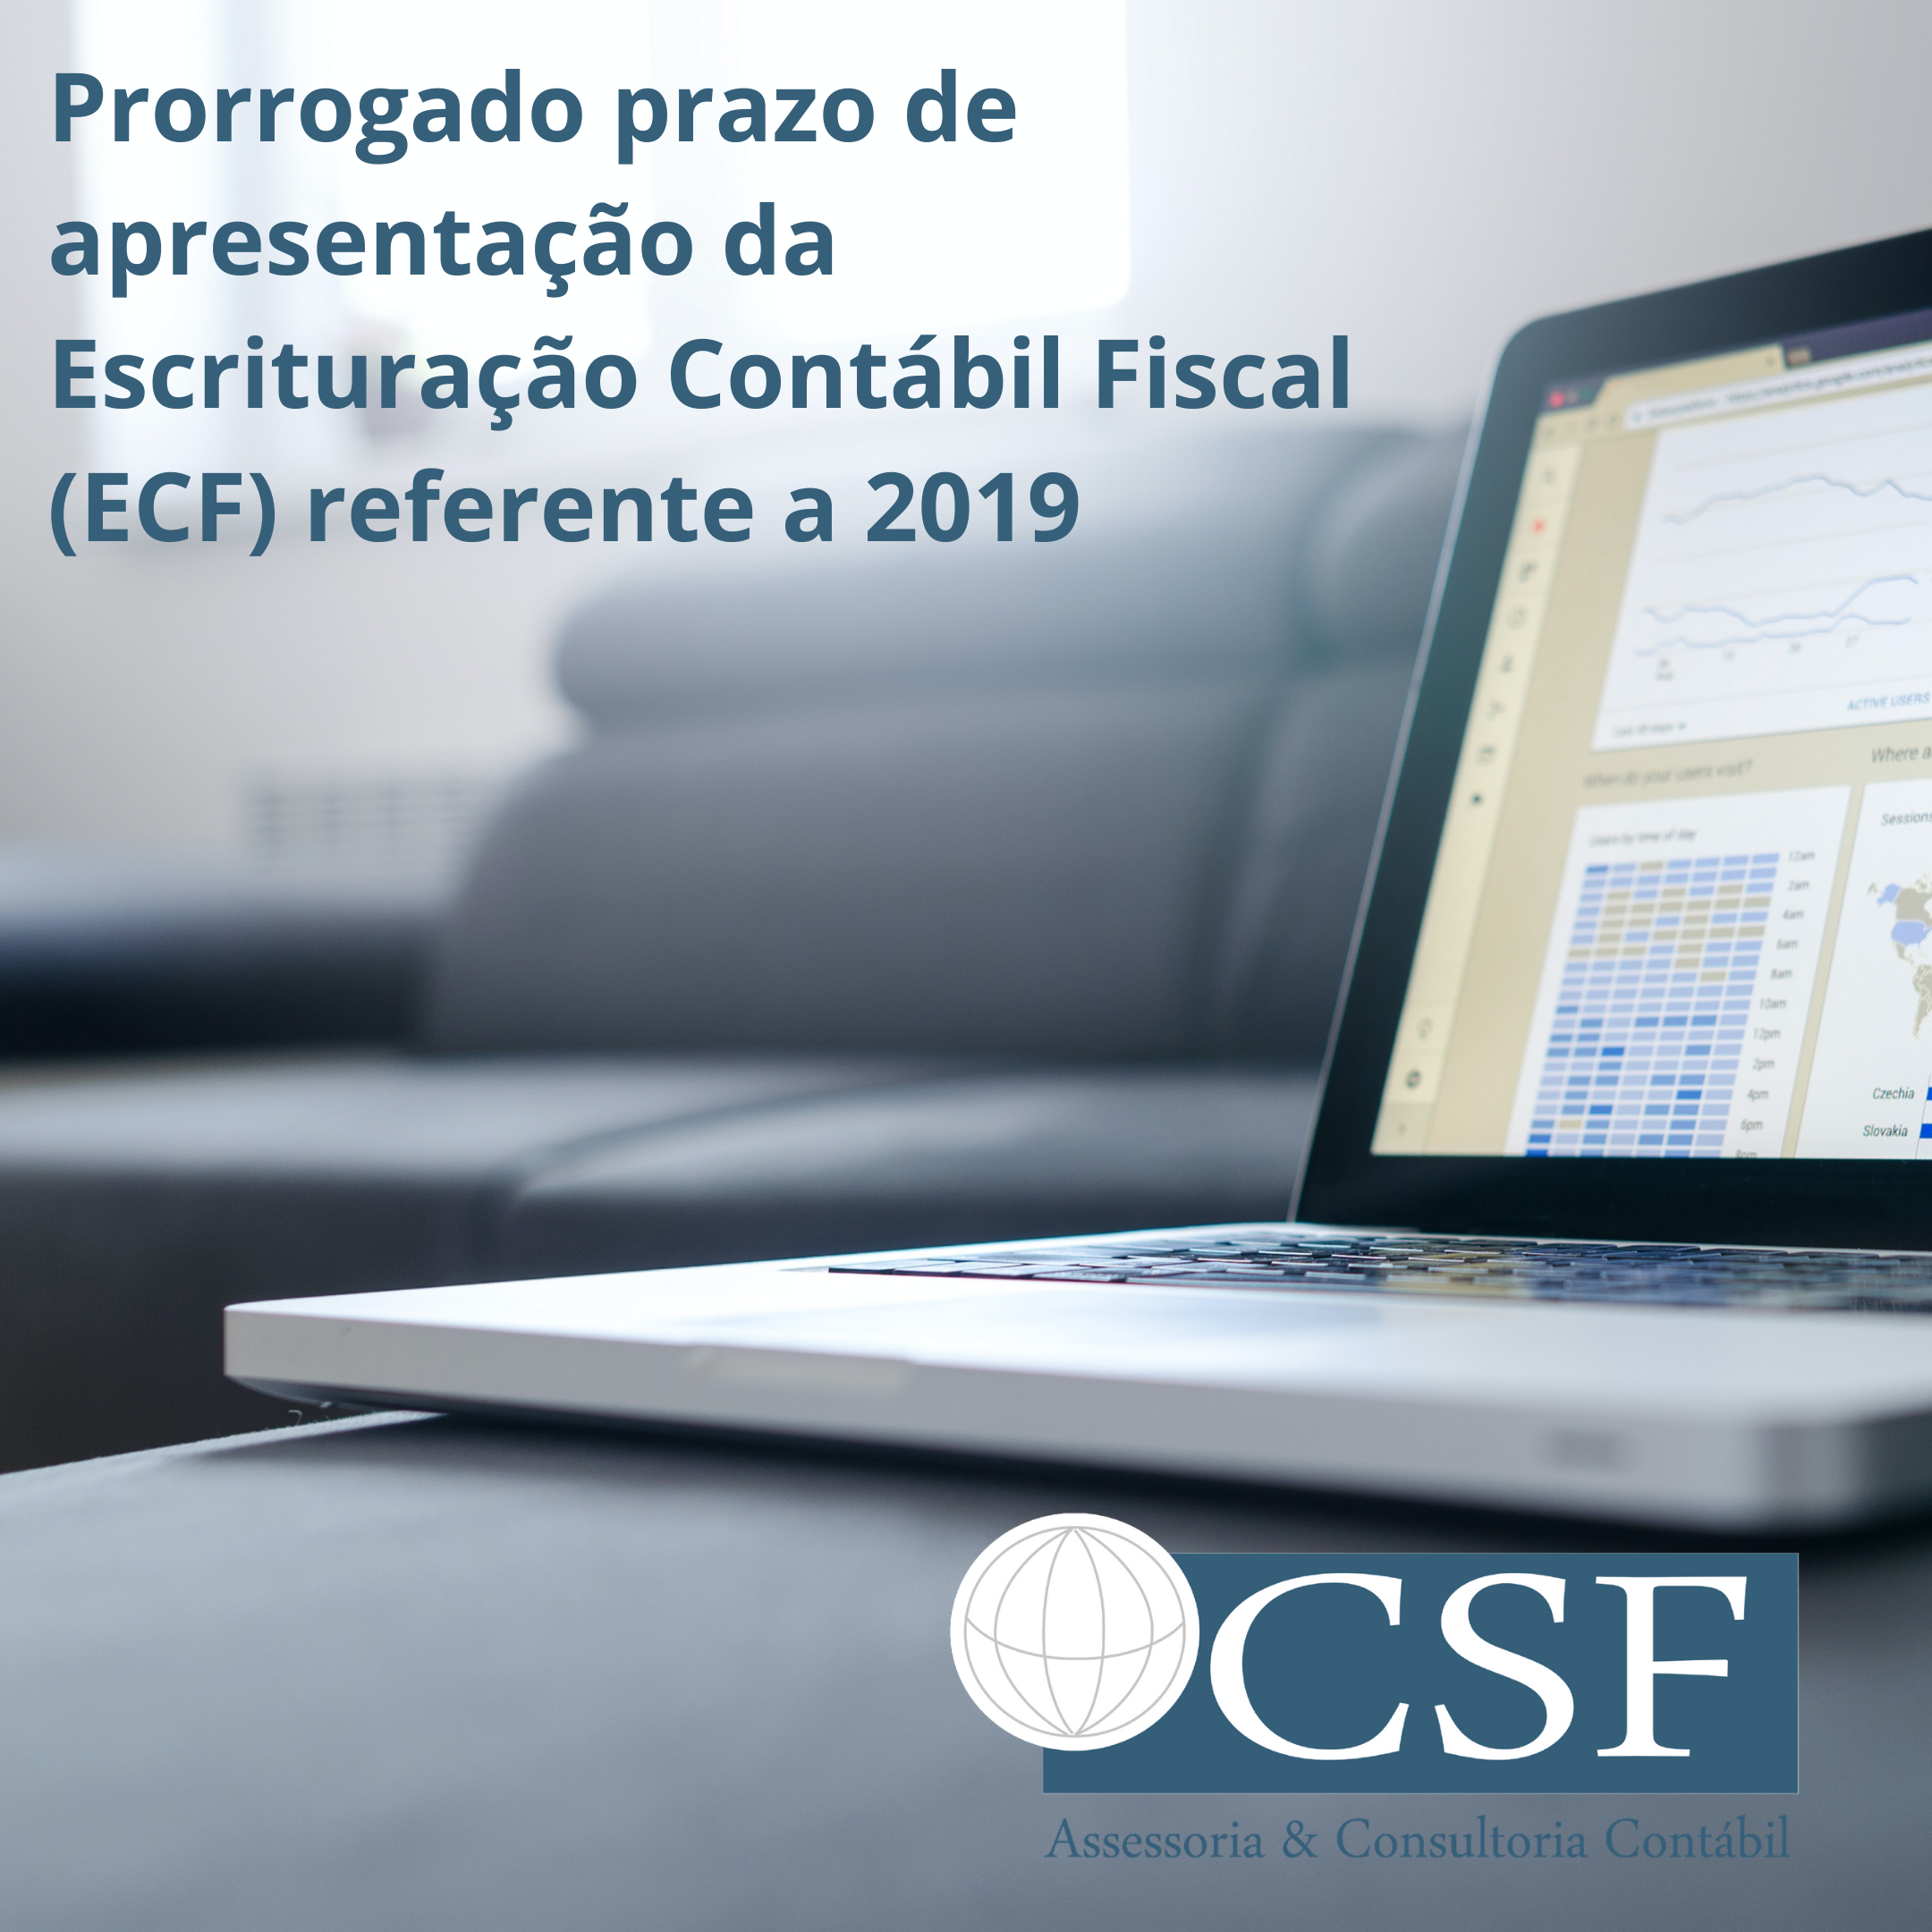 Prorrogado prazo de apresentação da Escrituração Contábil Fiscal (ECF) referente a 2019